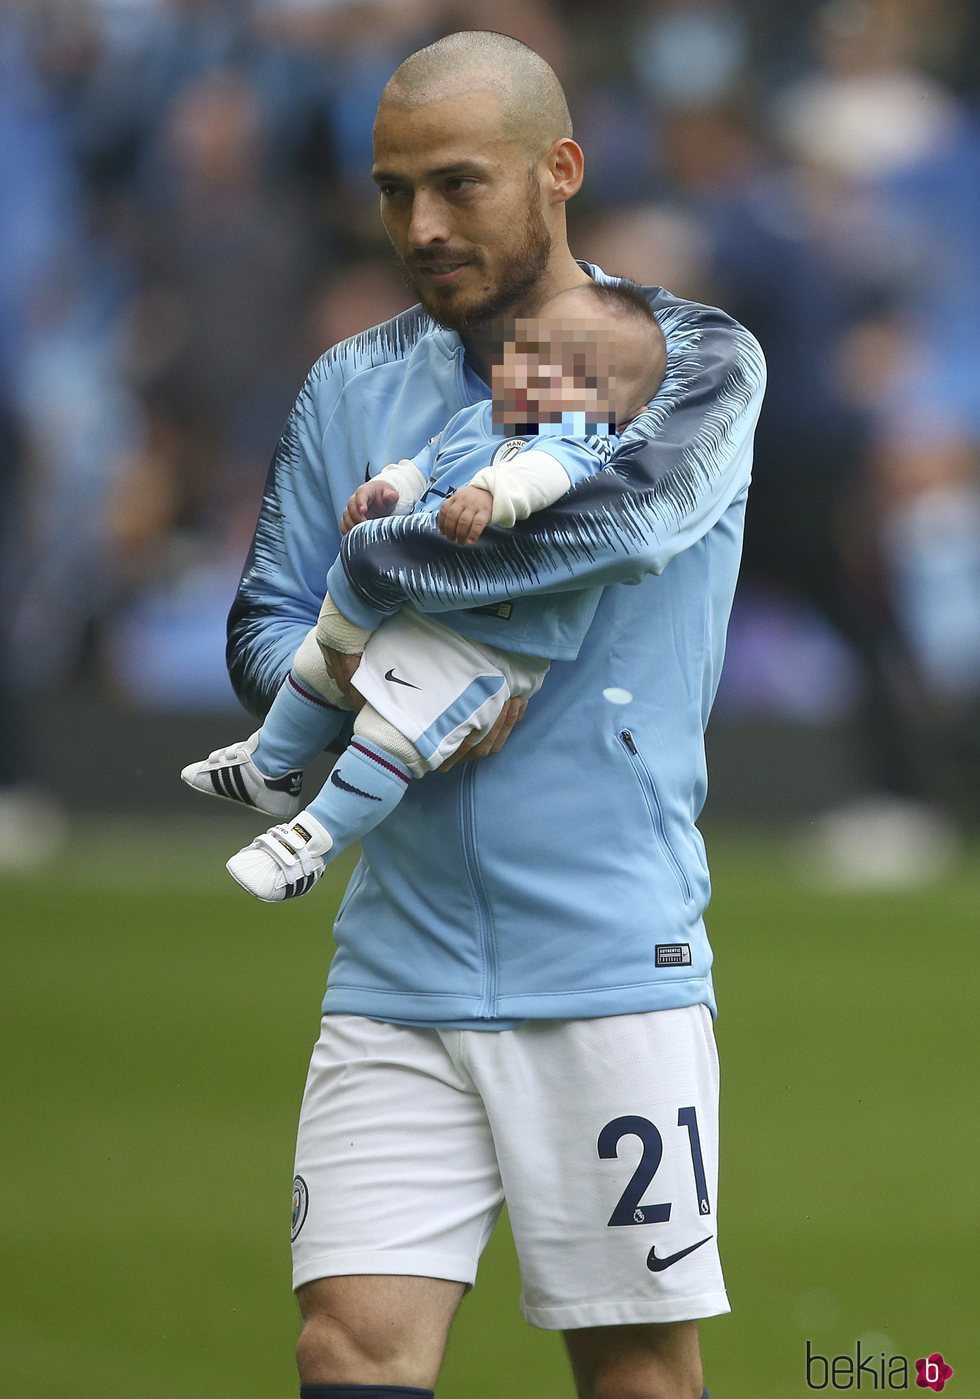 David Silva con su hijo Mateo por primera vez en un campo de fútbol